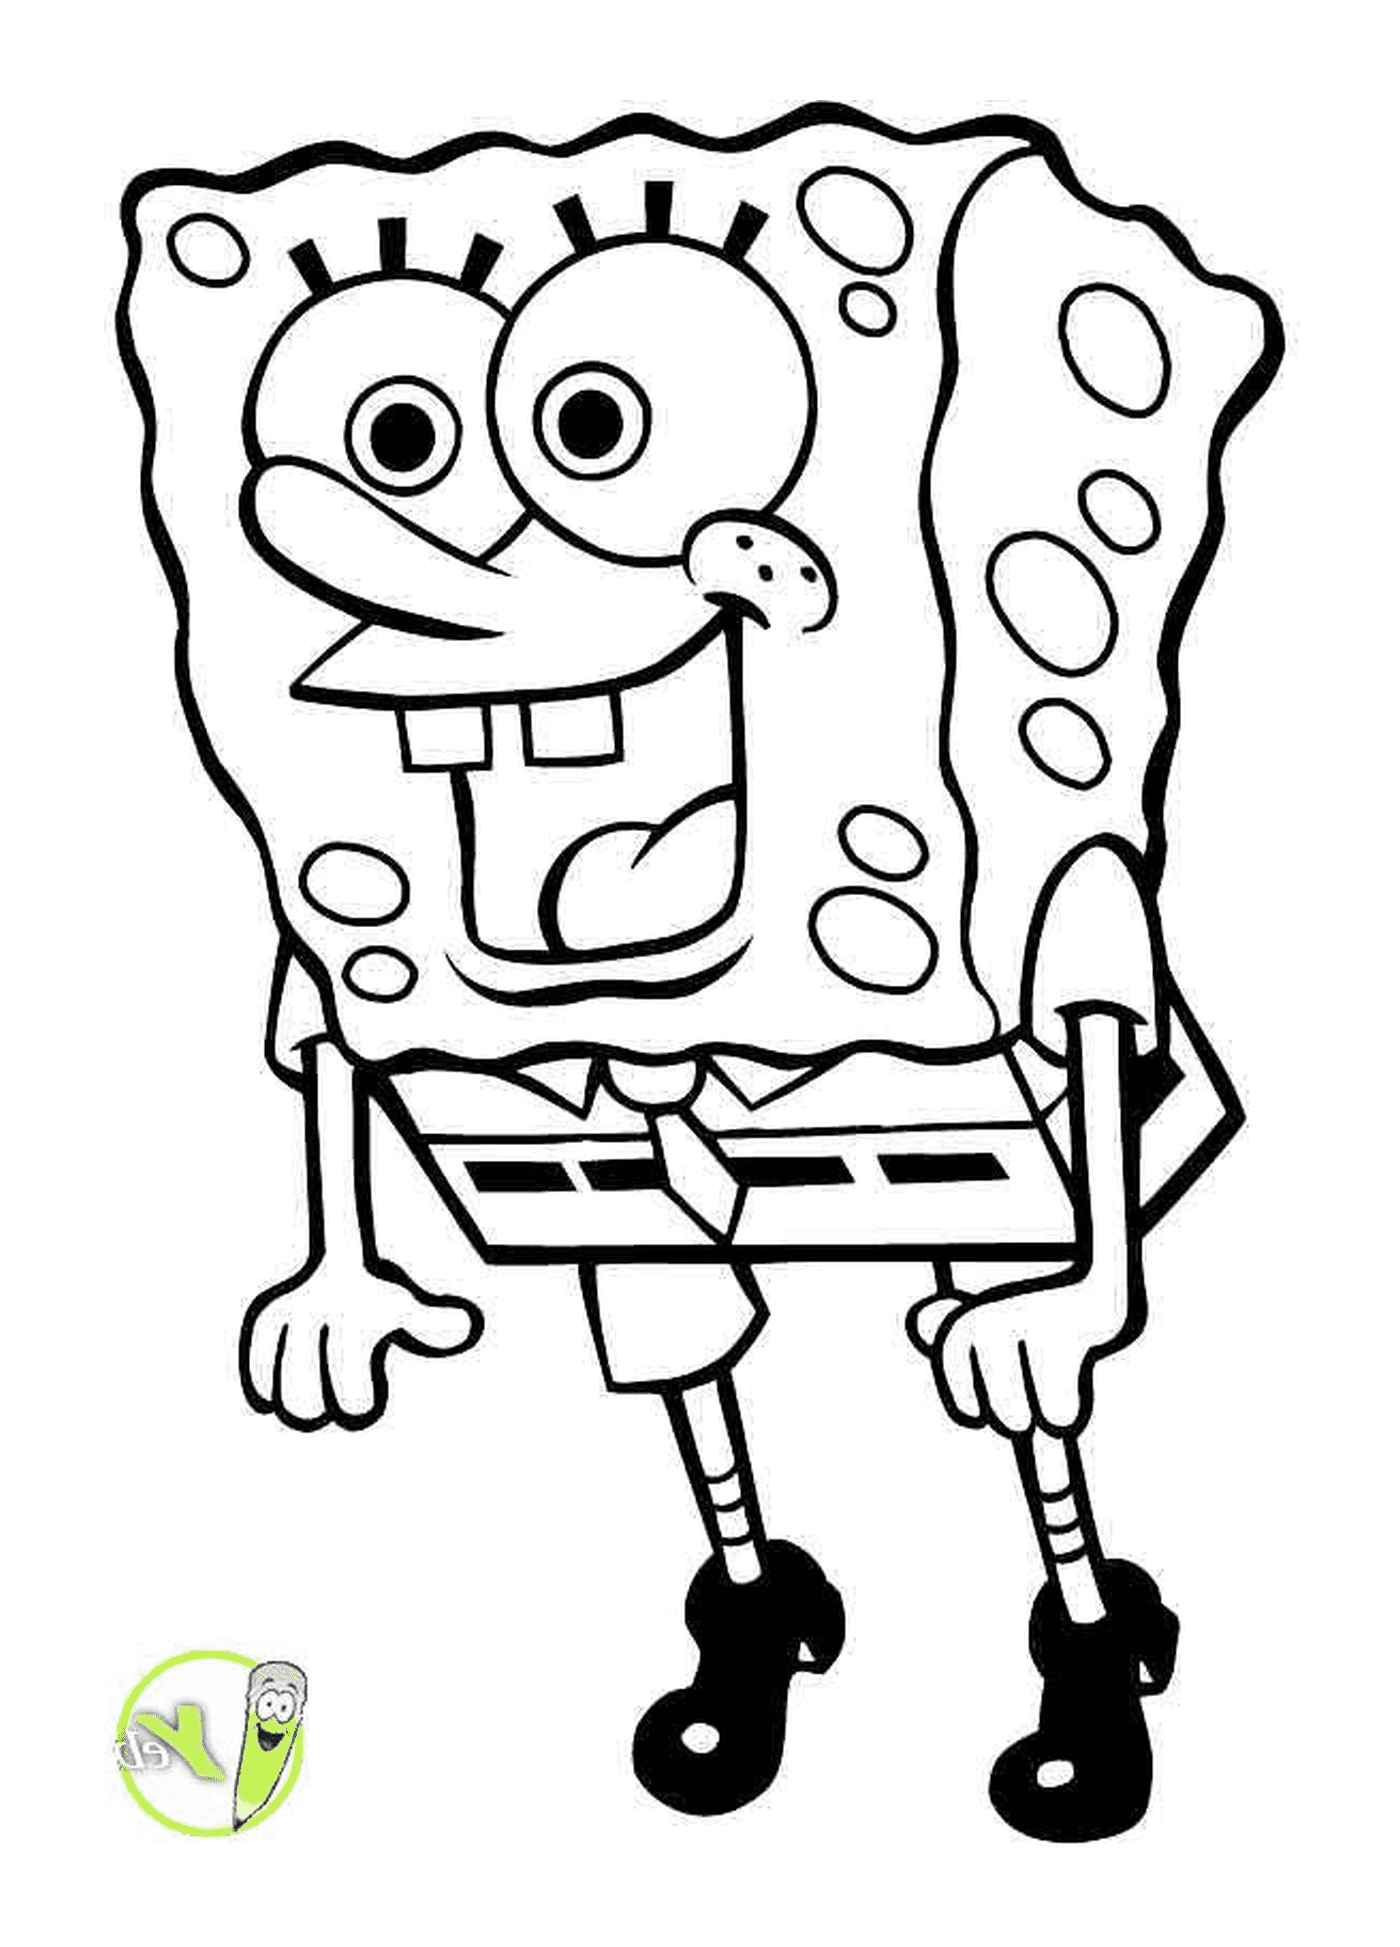  Un personaggio di SpongeBob 